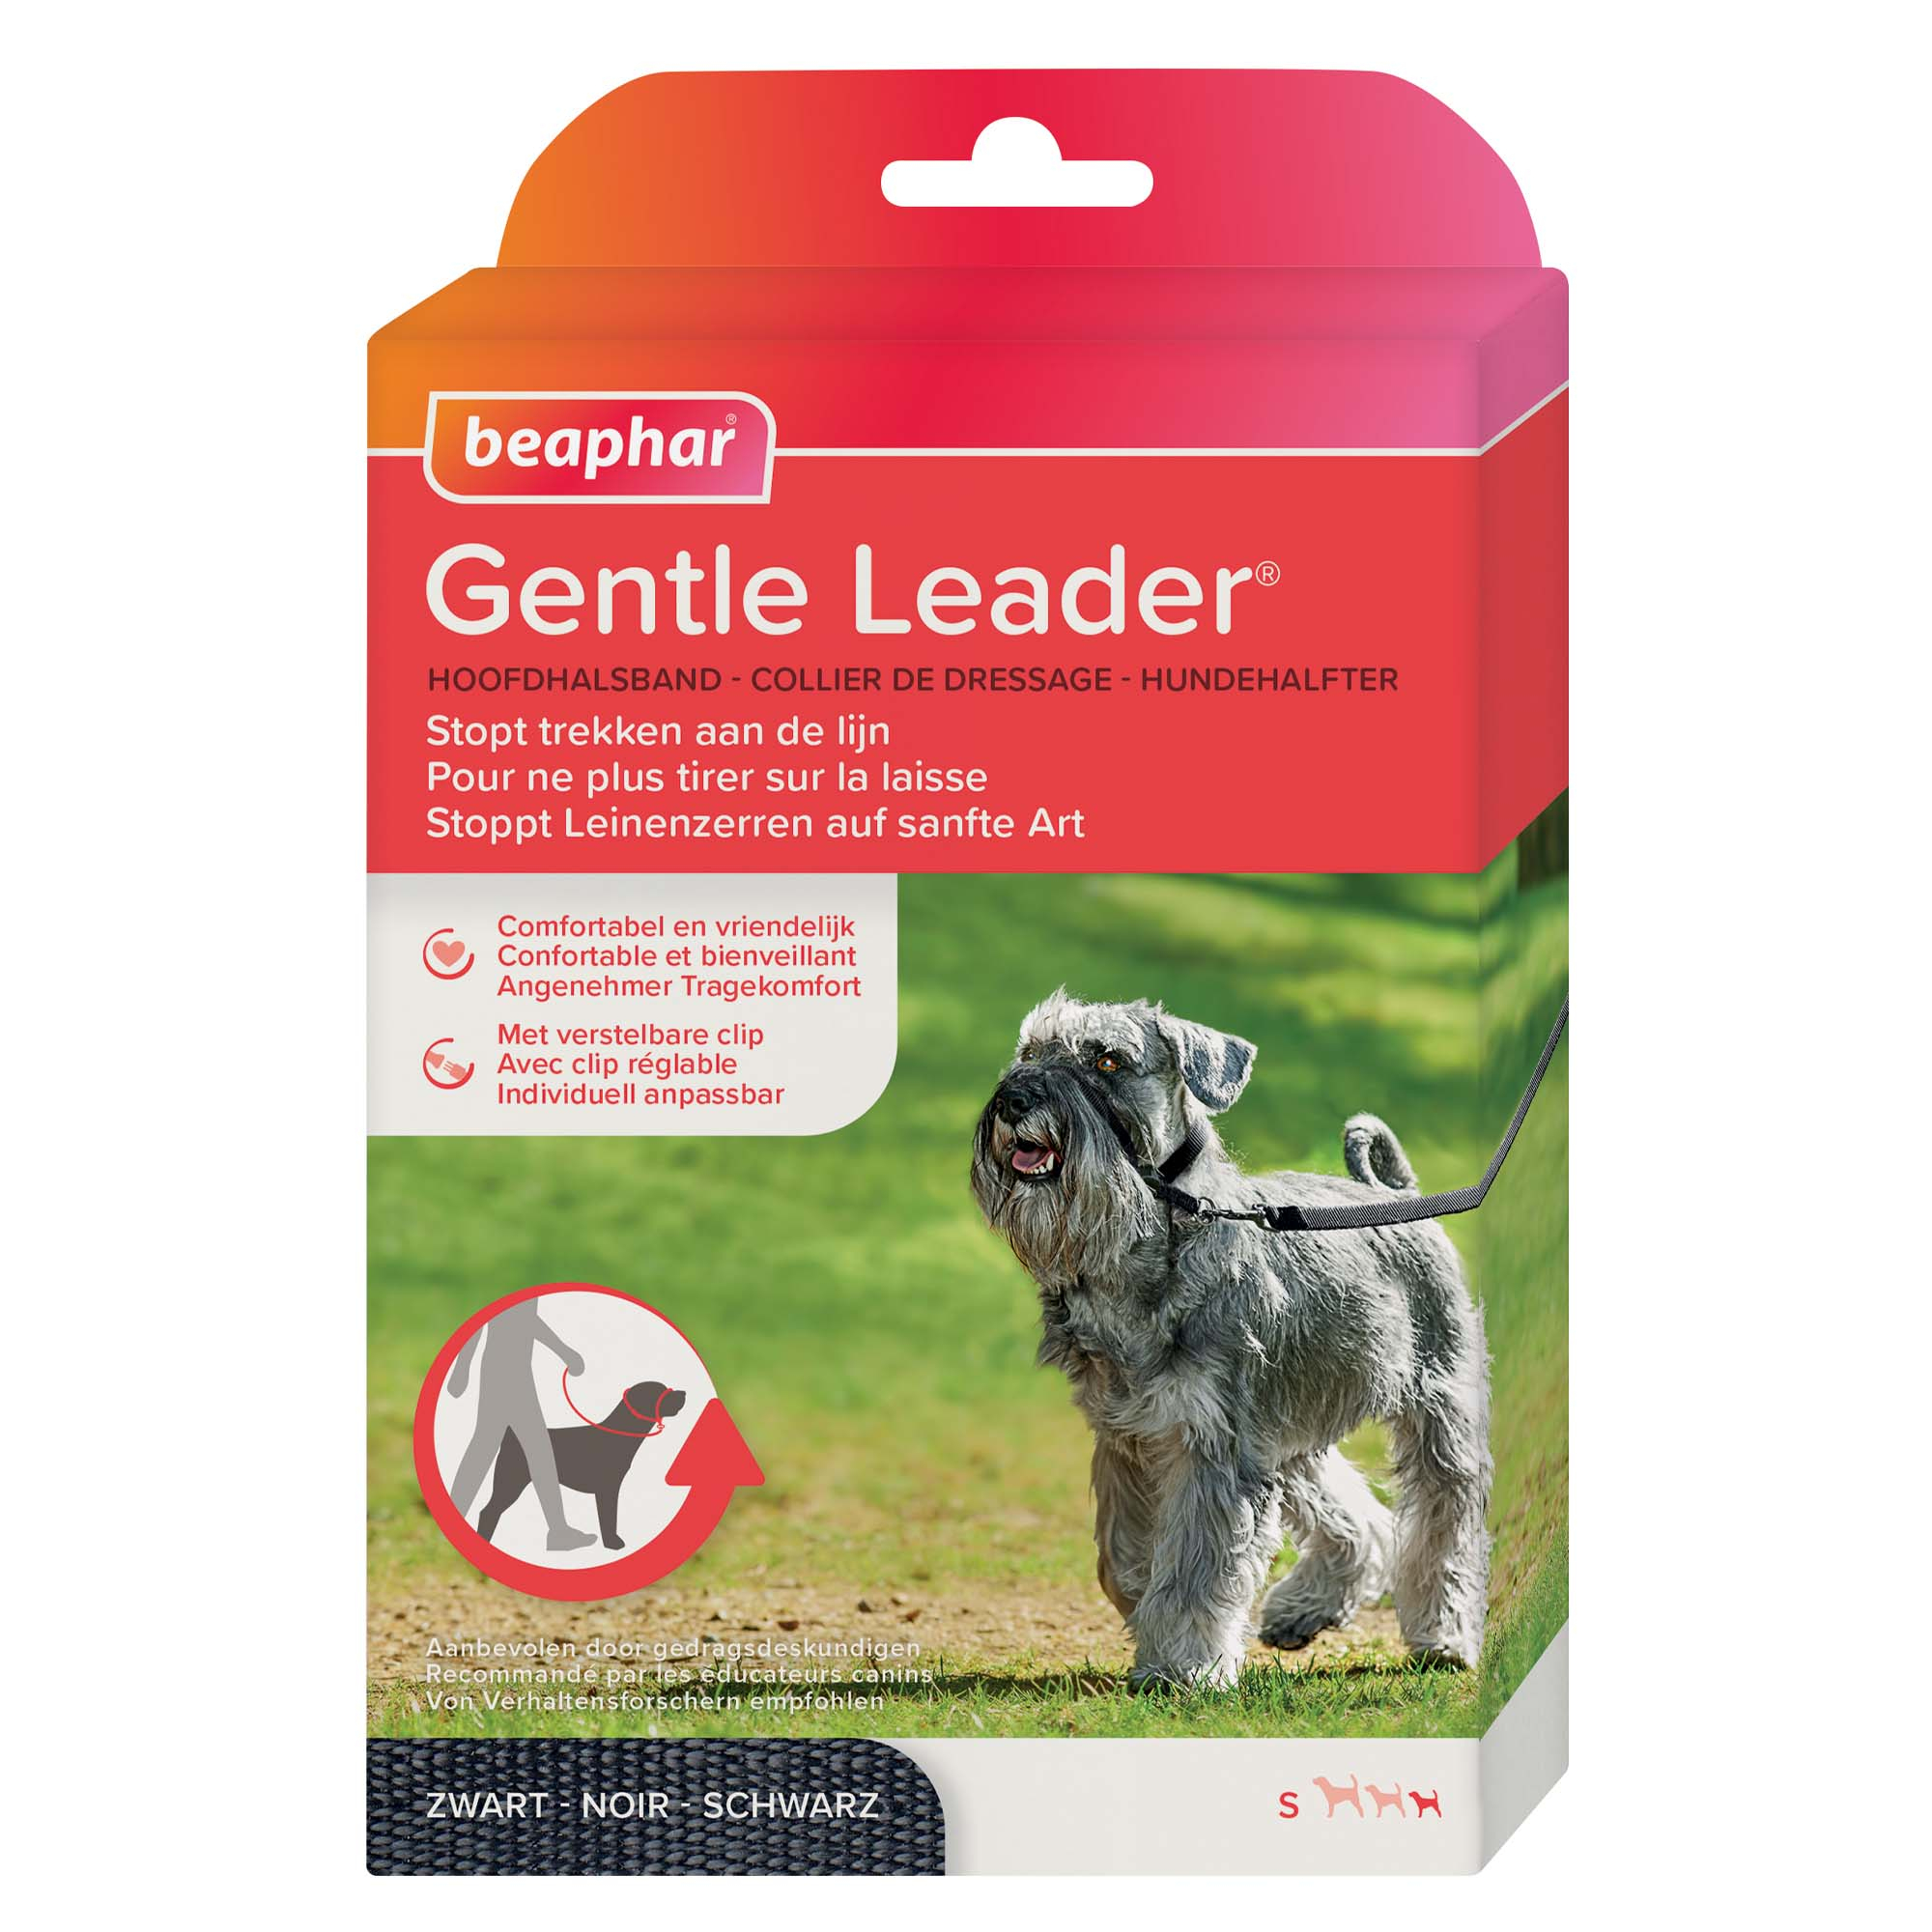 Gentle Leader - collare educativo per cani